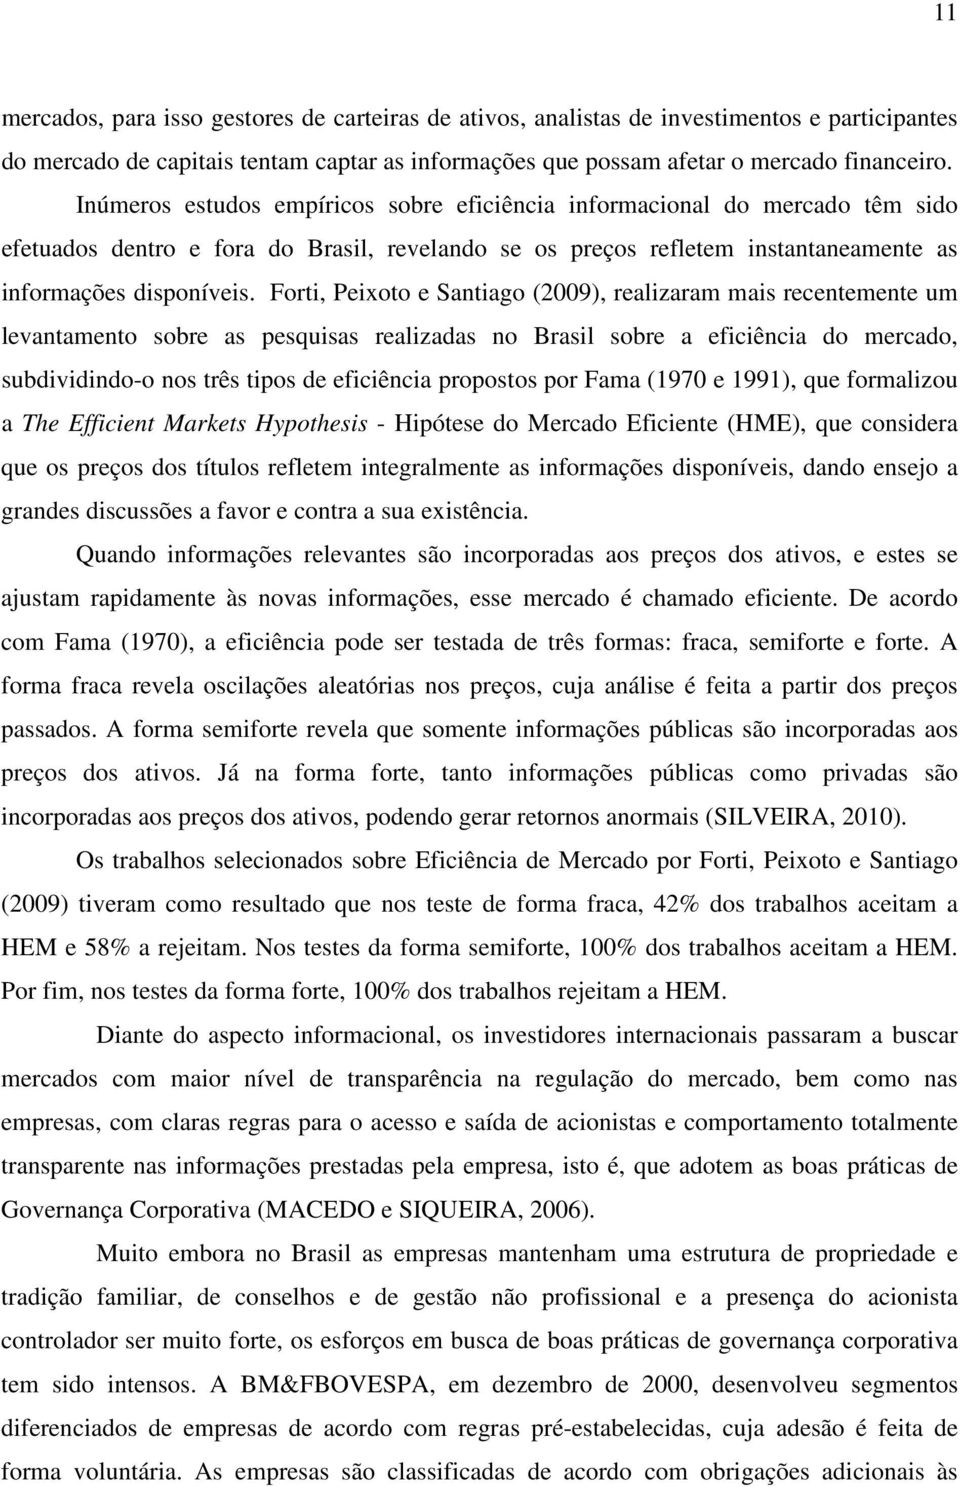 Fori, Peixoo e Saniago (2009), realizaram mais recenemene um levanameno sobre as pesquisas realizadas no Brasil sobre a eficiência do mercado, subdividindo-o nos rês ipos de eficiência proposos por